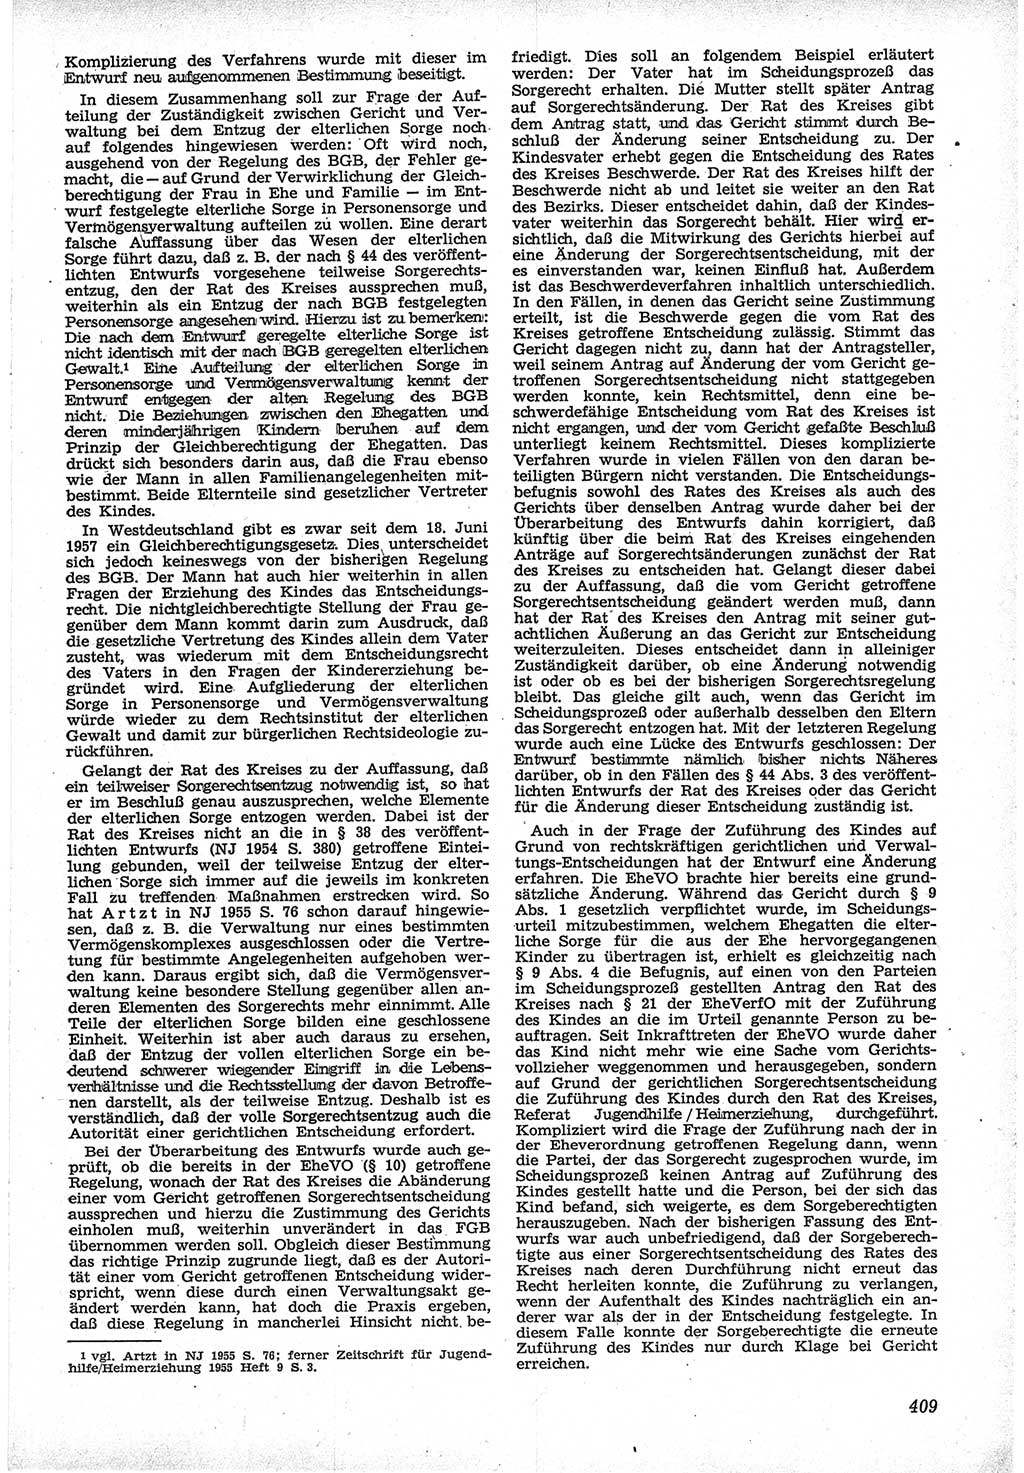 Neue Justiz (NJ), Zeitschrift für Recht und Rechtswissenschaft [Deutsche Demokratische Republik (DDR)], 12. Jahrgang 1958, Seite 409 (NJ DDR 1958, S. 409)